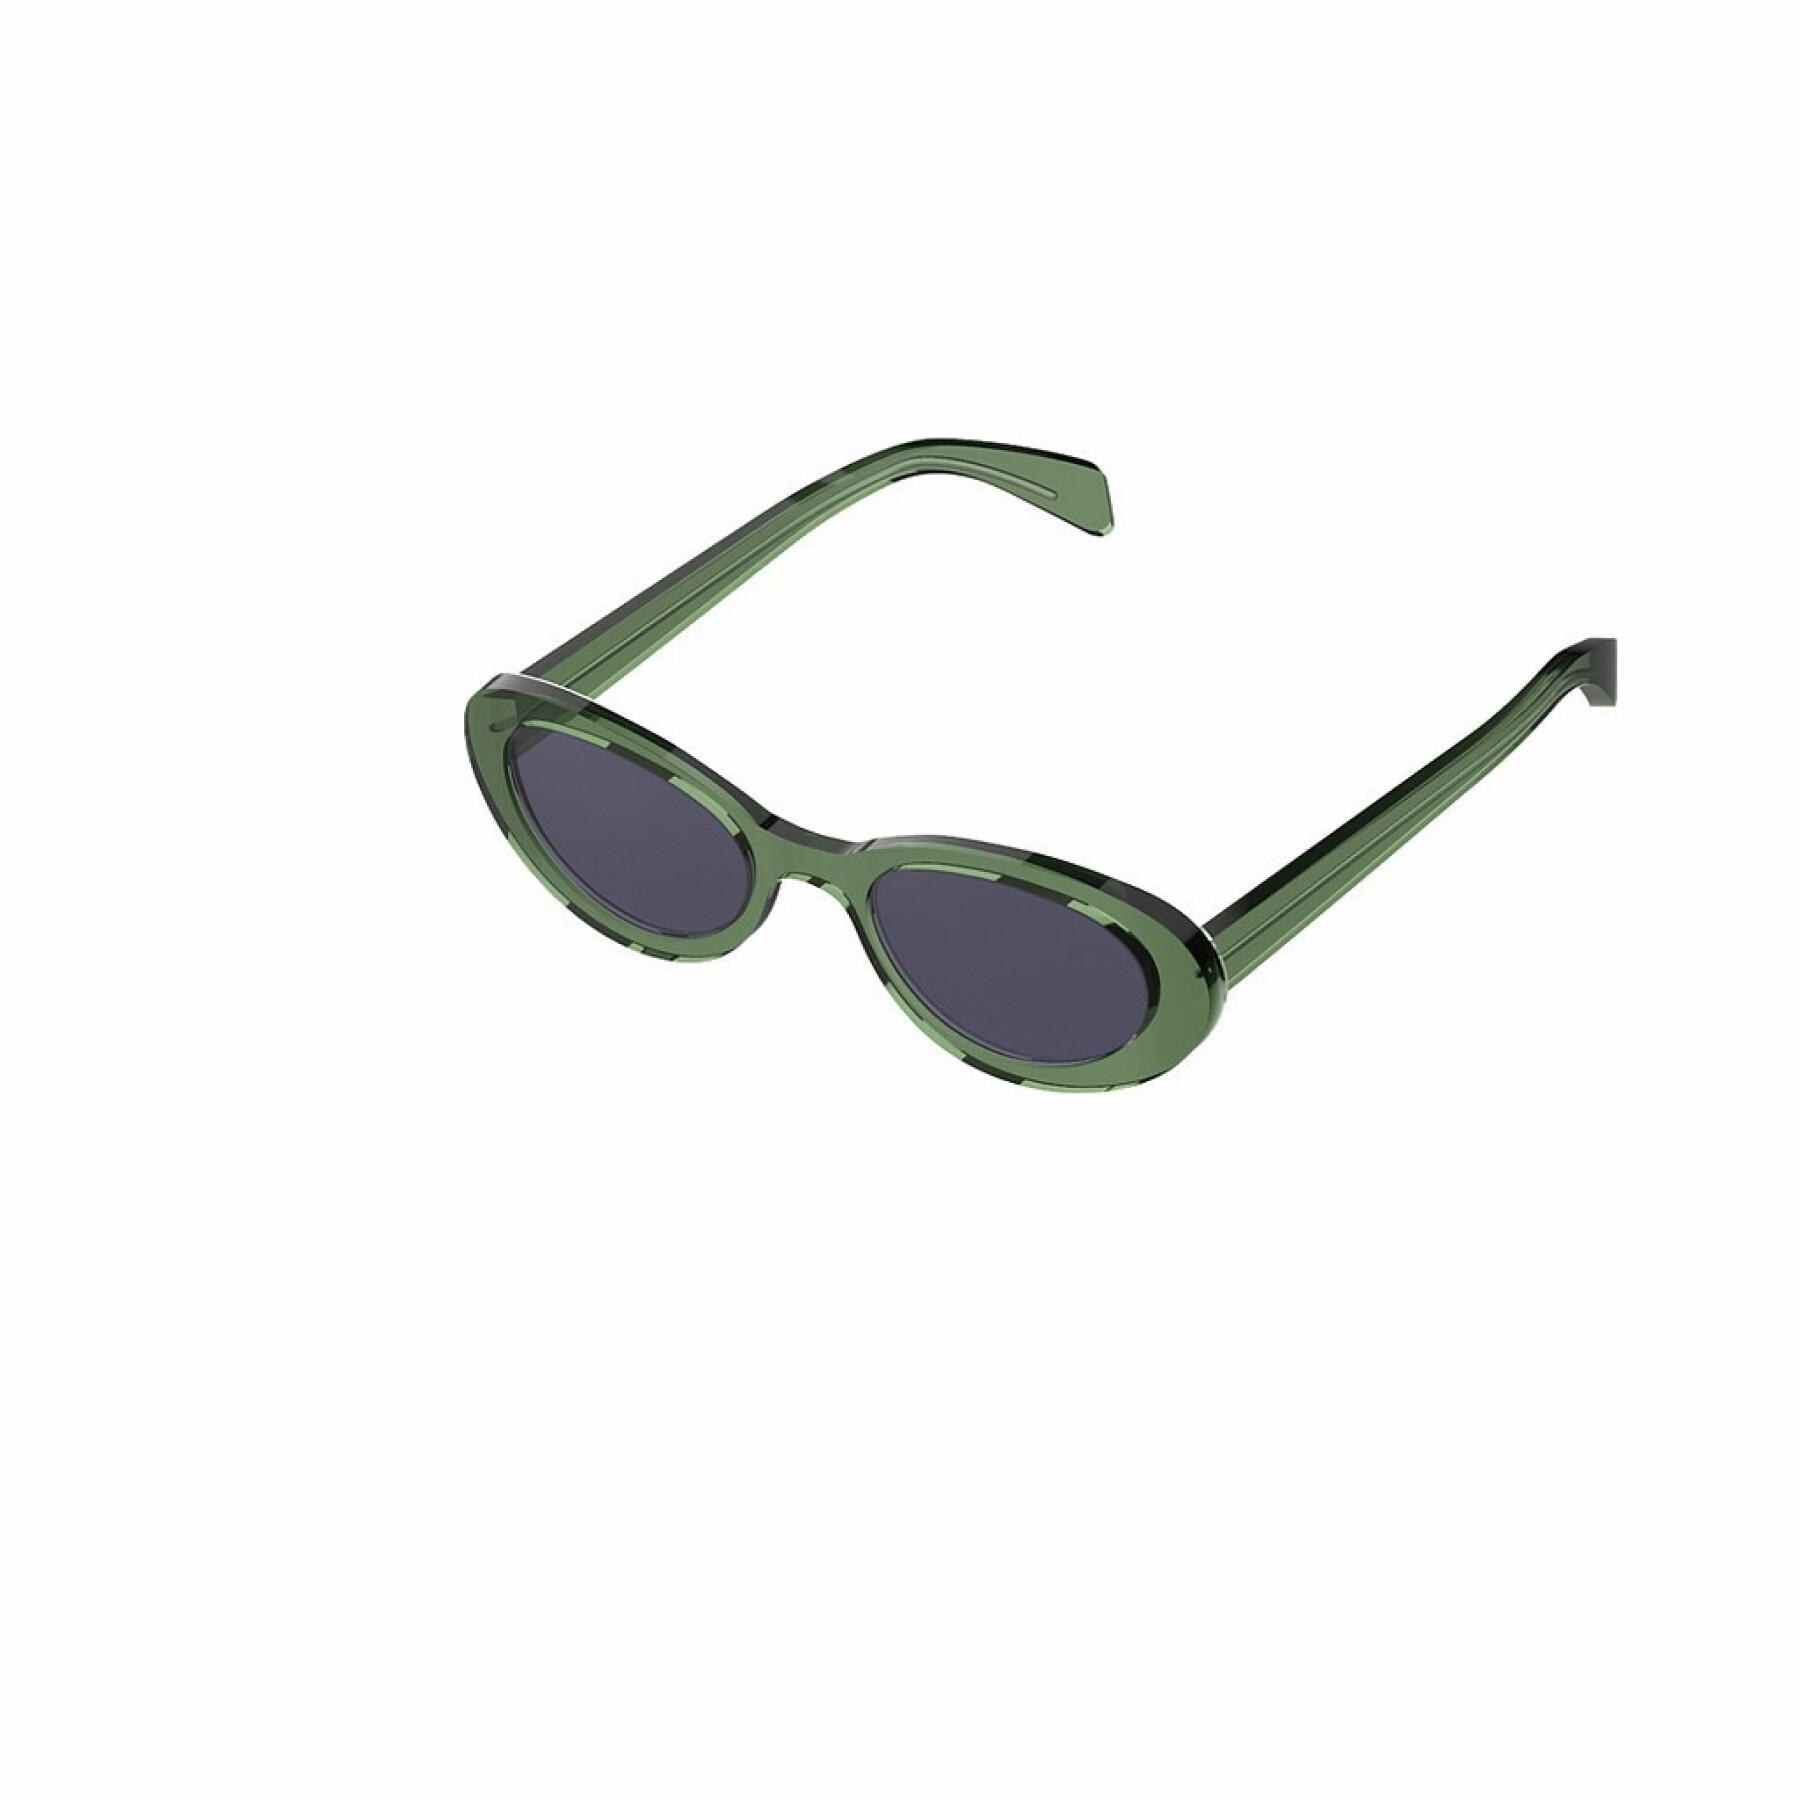 Sunglasses Komono Ana